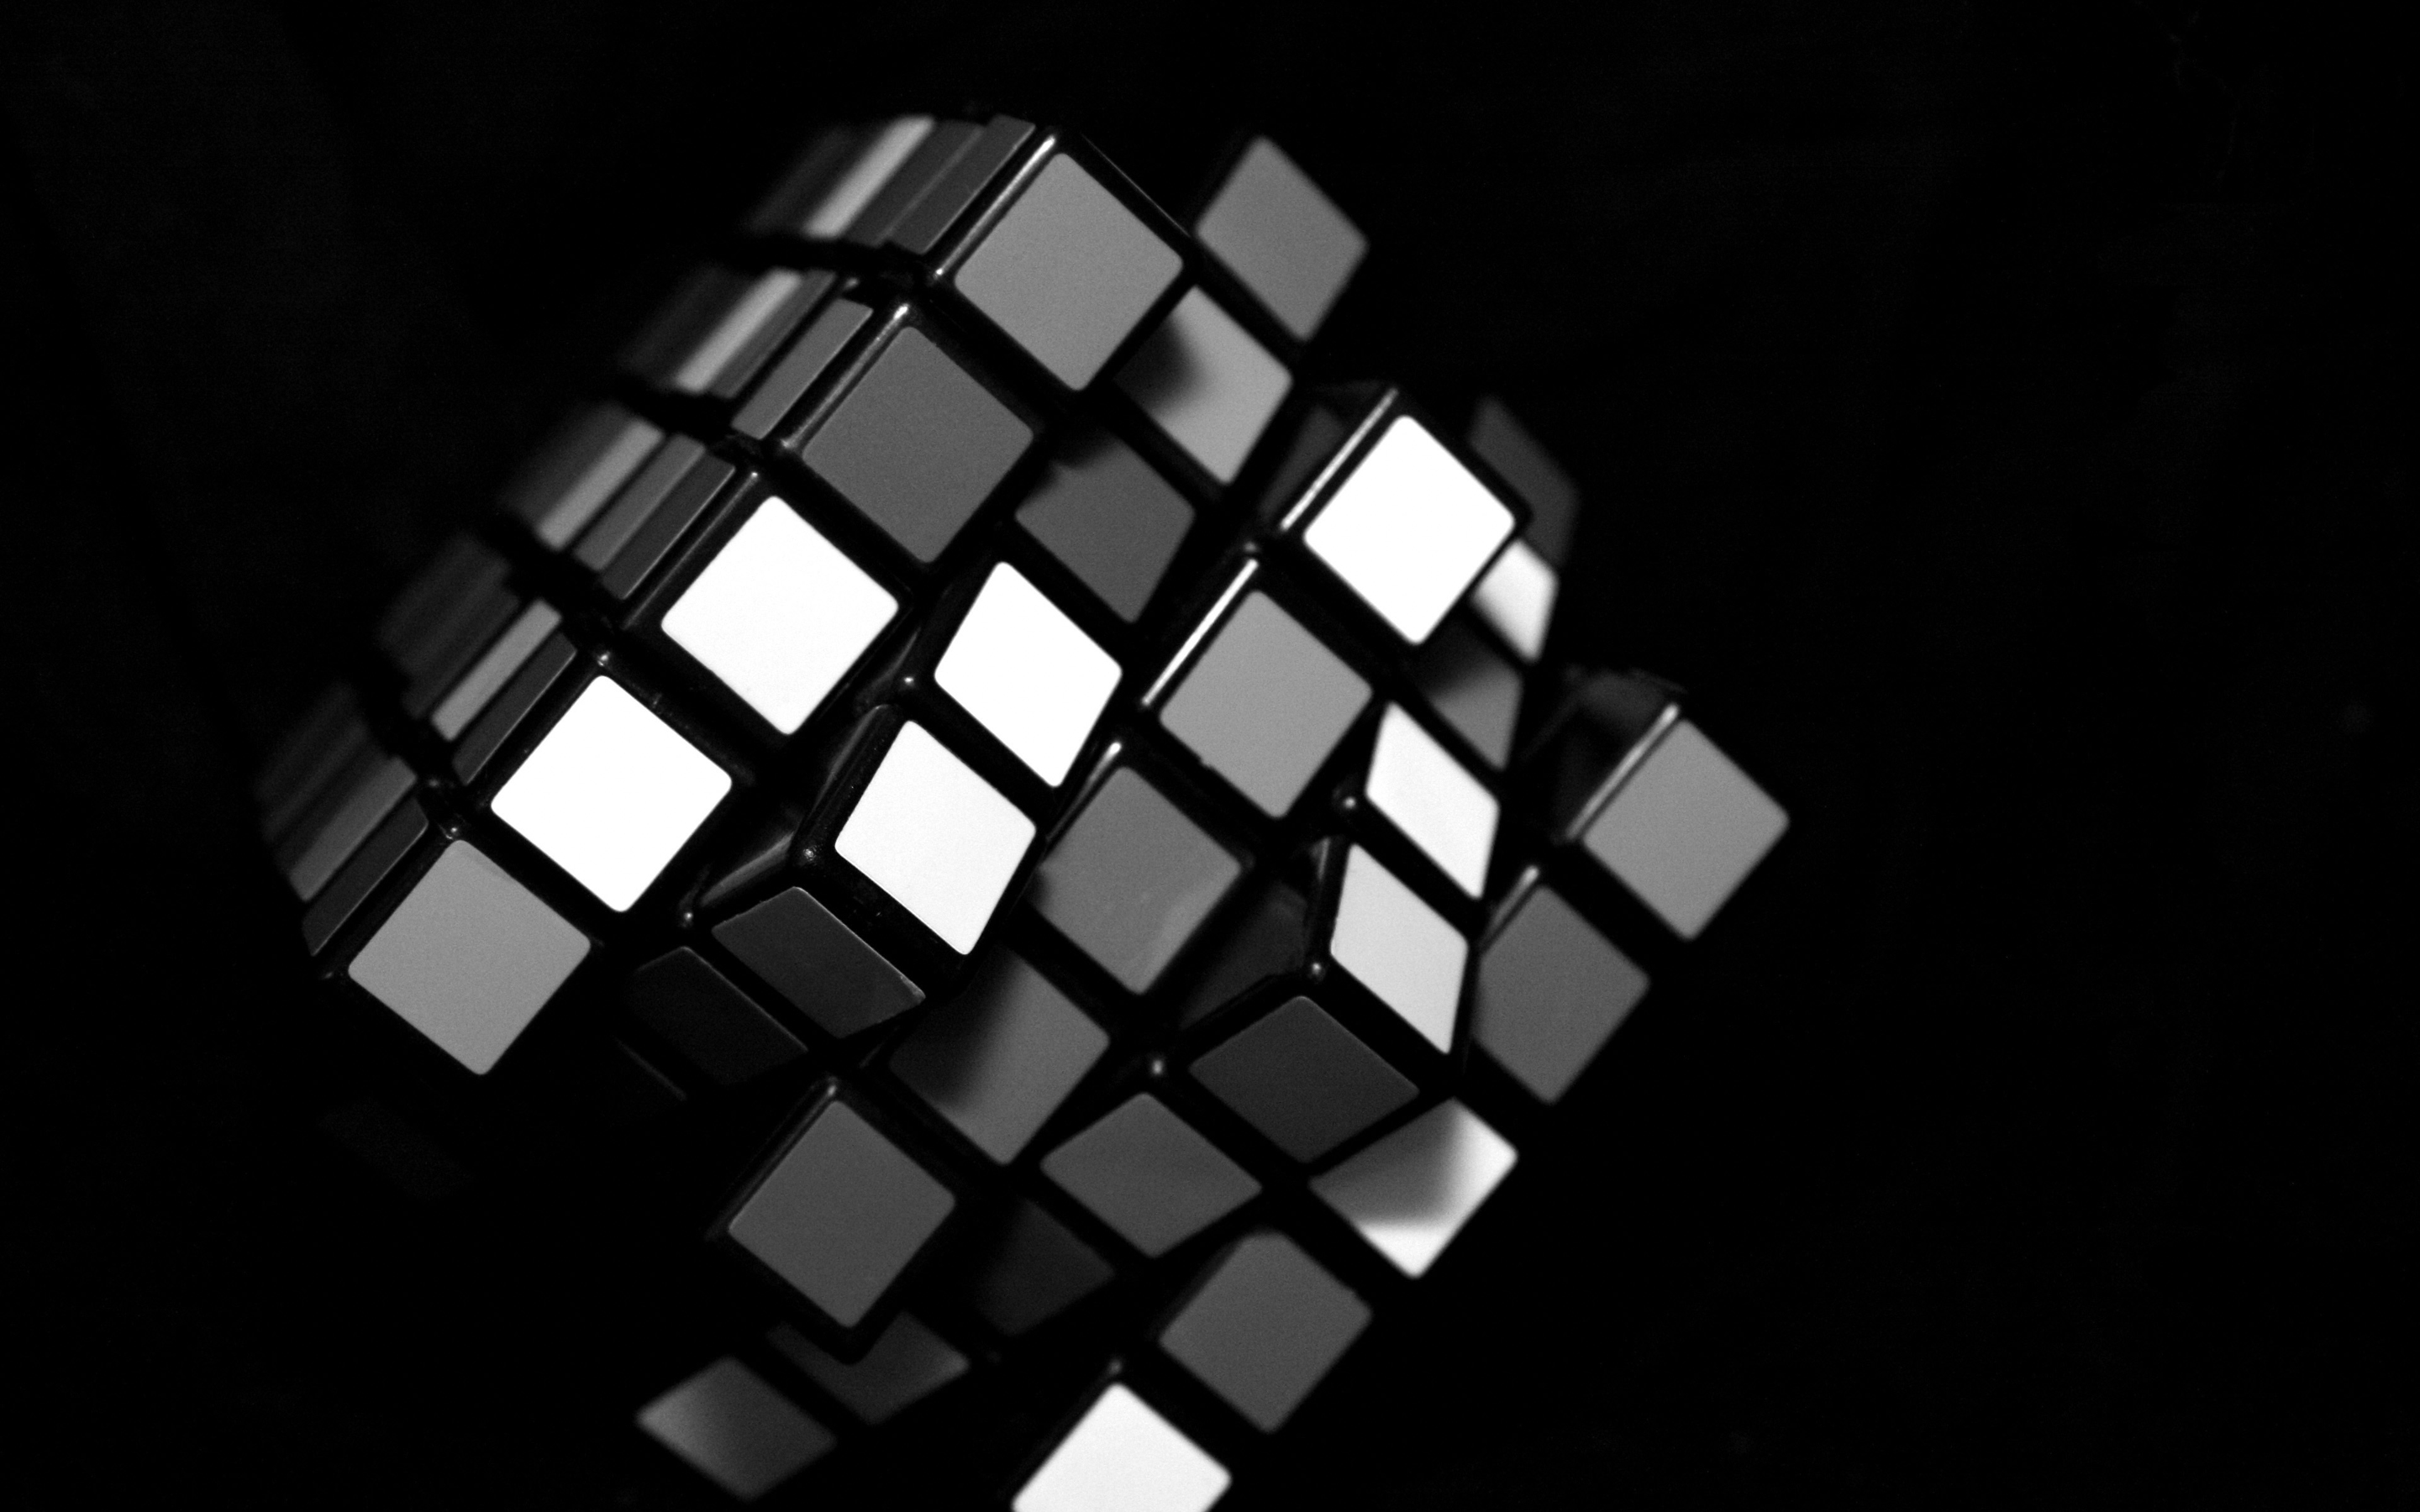 Vk Rubiks Cube Wallpaper 4usky